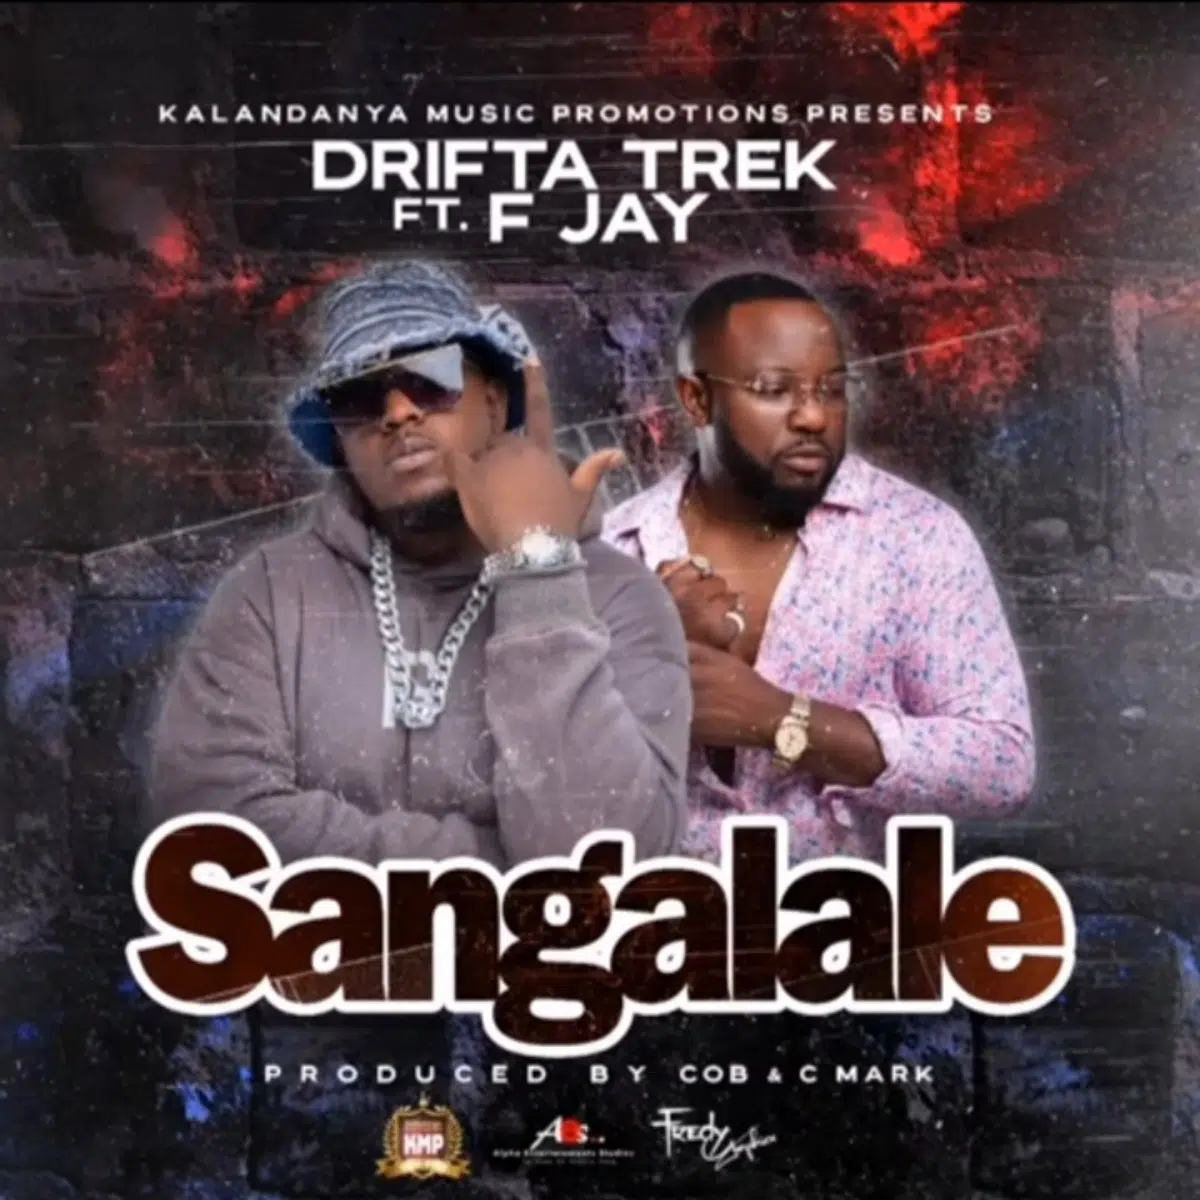 DOWNLOAD: Drifta Trek Feat F Jay – “Sangalale” Mp3